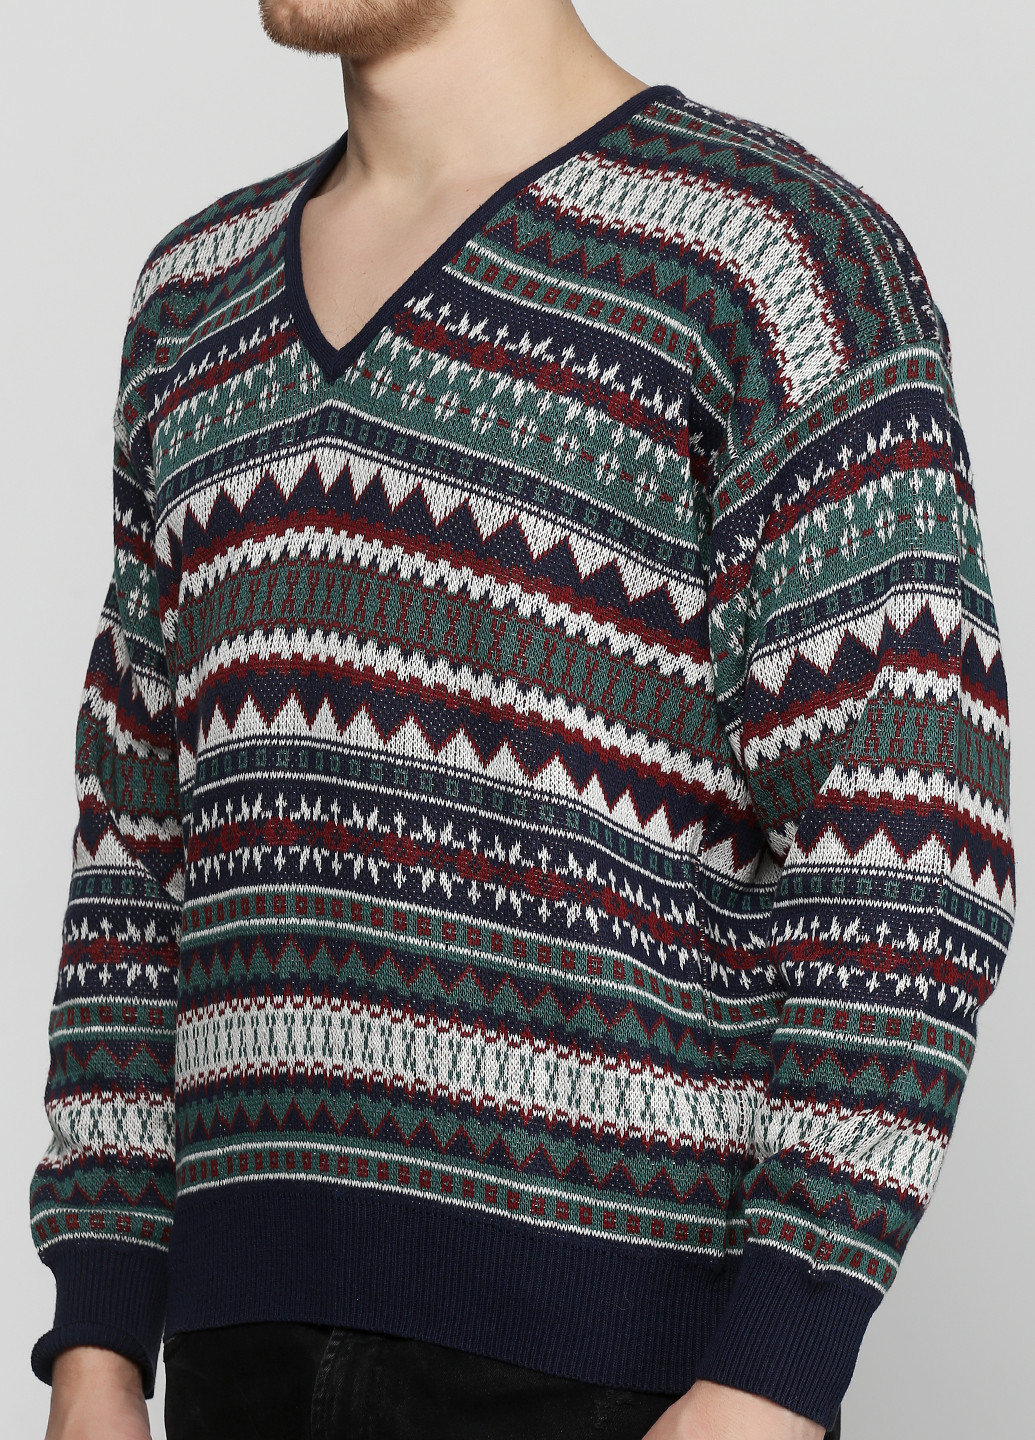 Комбинированный демисезонный пуловер пуловер Barbieri